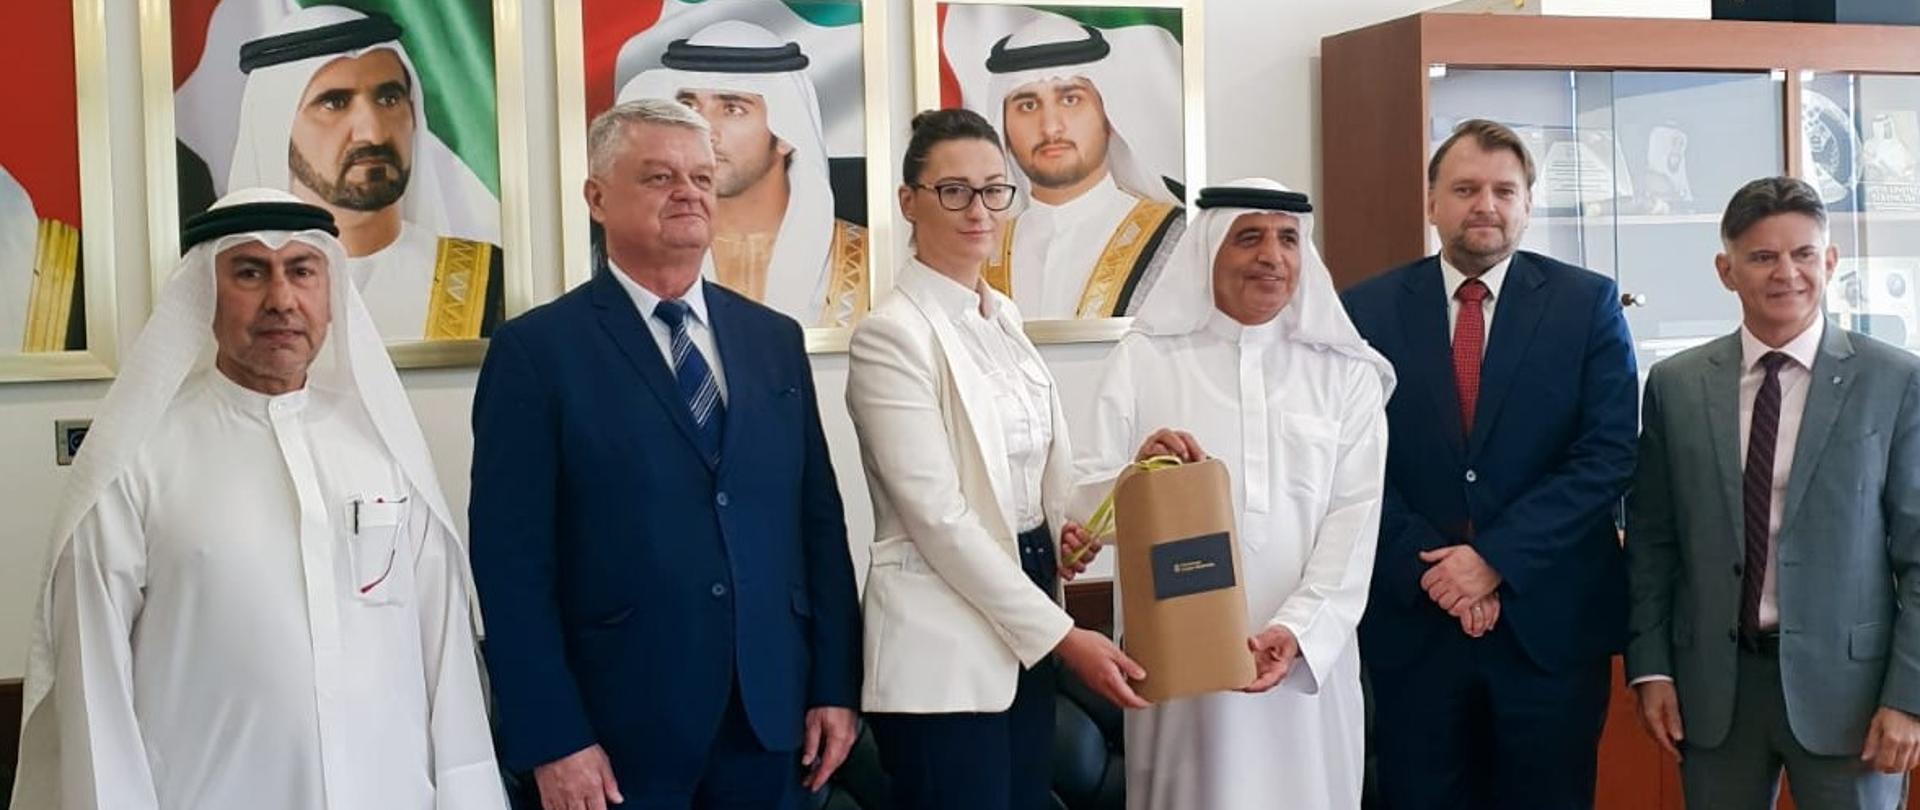 Wiceminister Małgorzata Golińska przewodniczyła misji gospodarczej GreenEvo do Zjednoczonych Emiratów Arabskich